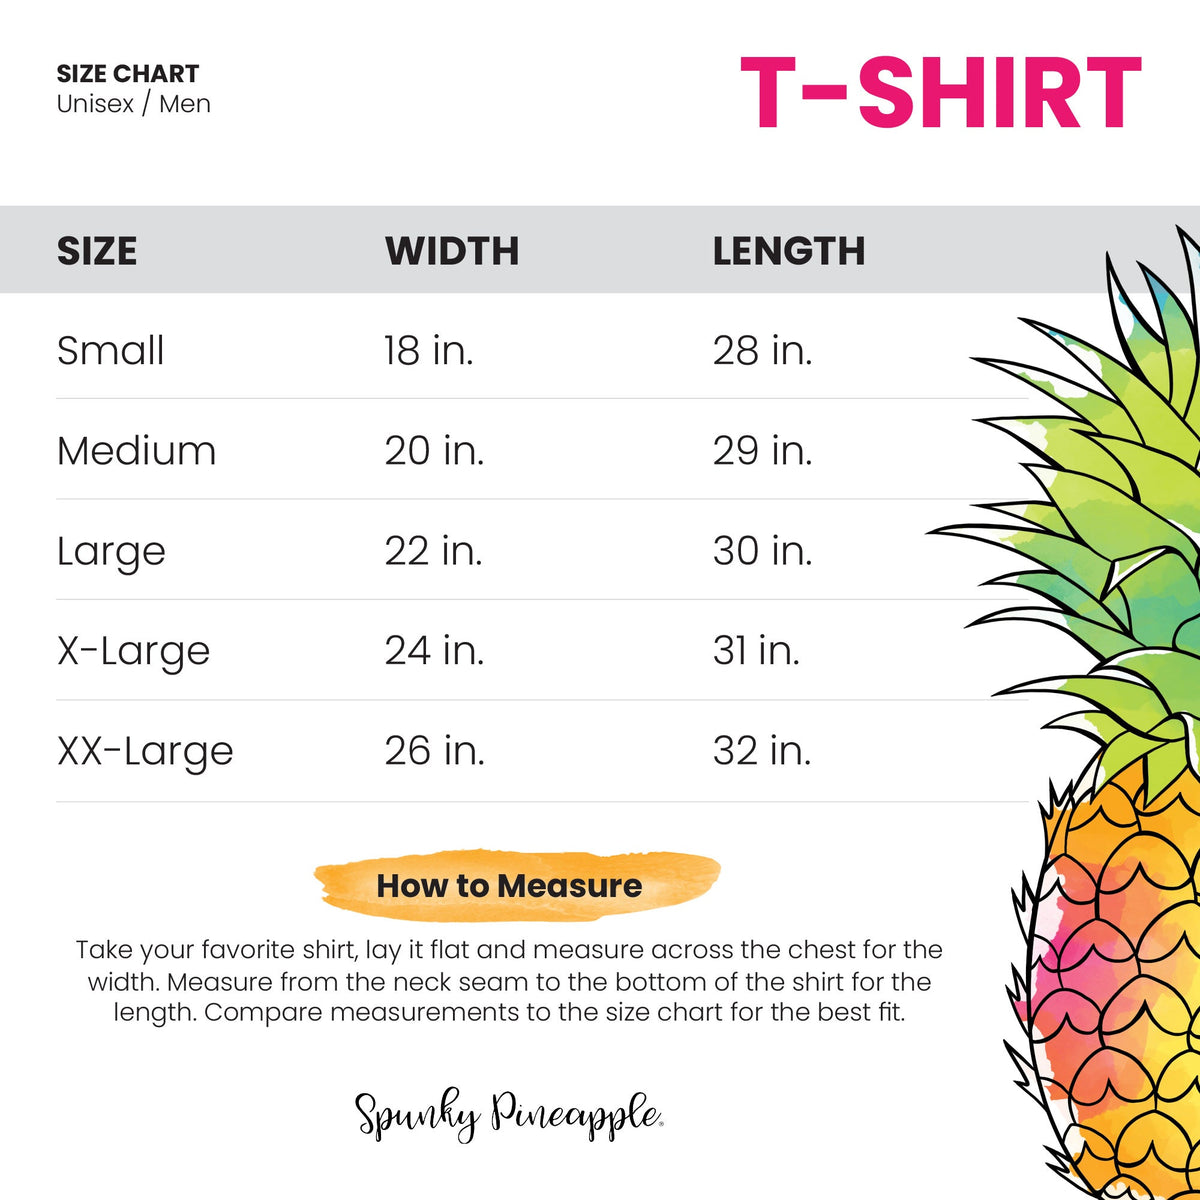 Tropical Christmas Palm Tree Unisex T-Shirt